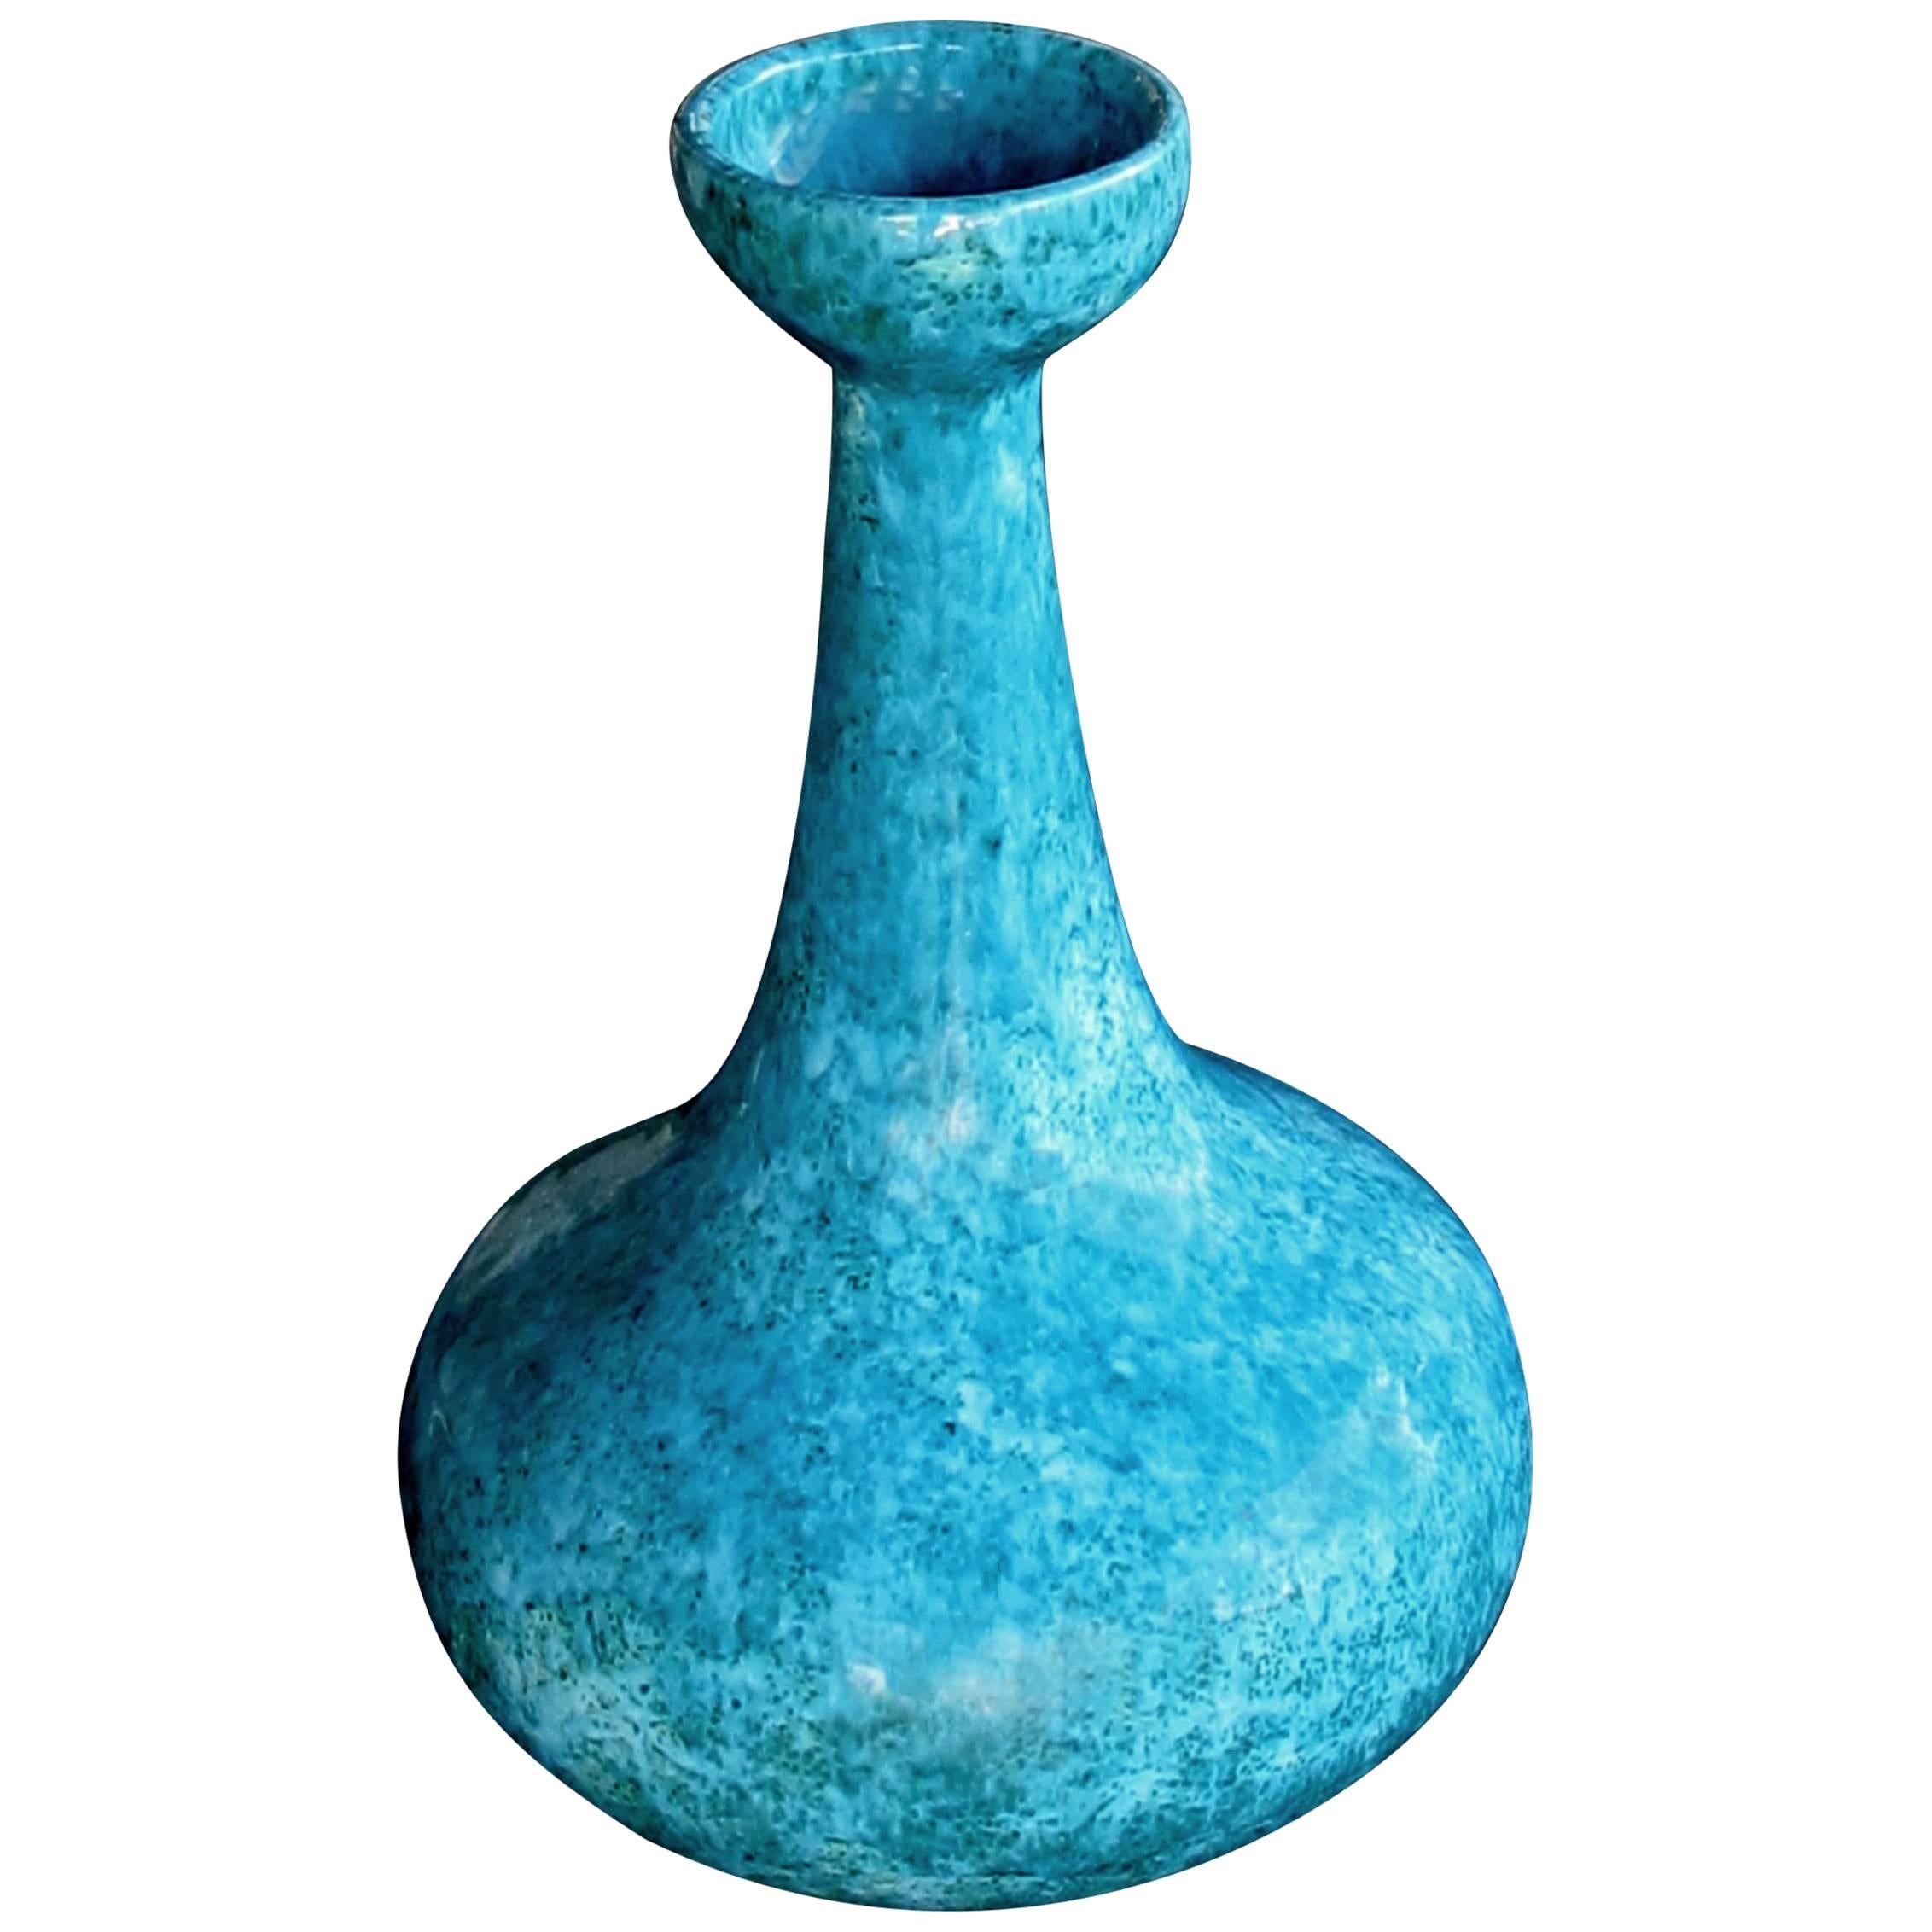 Impressive American 1960s Jaru Pottery Bottle-Form Teal-Glazed Vase/Vessel